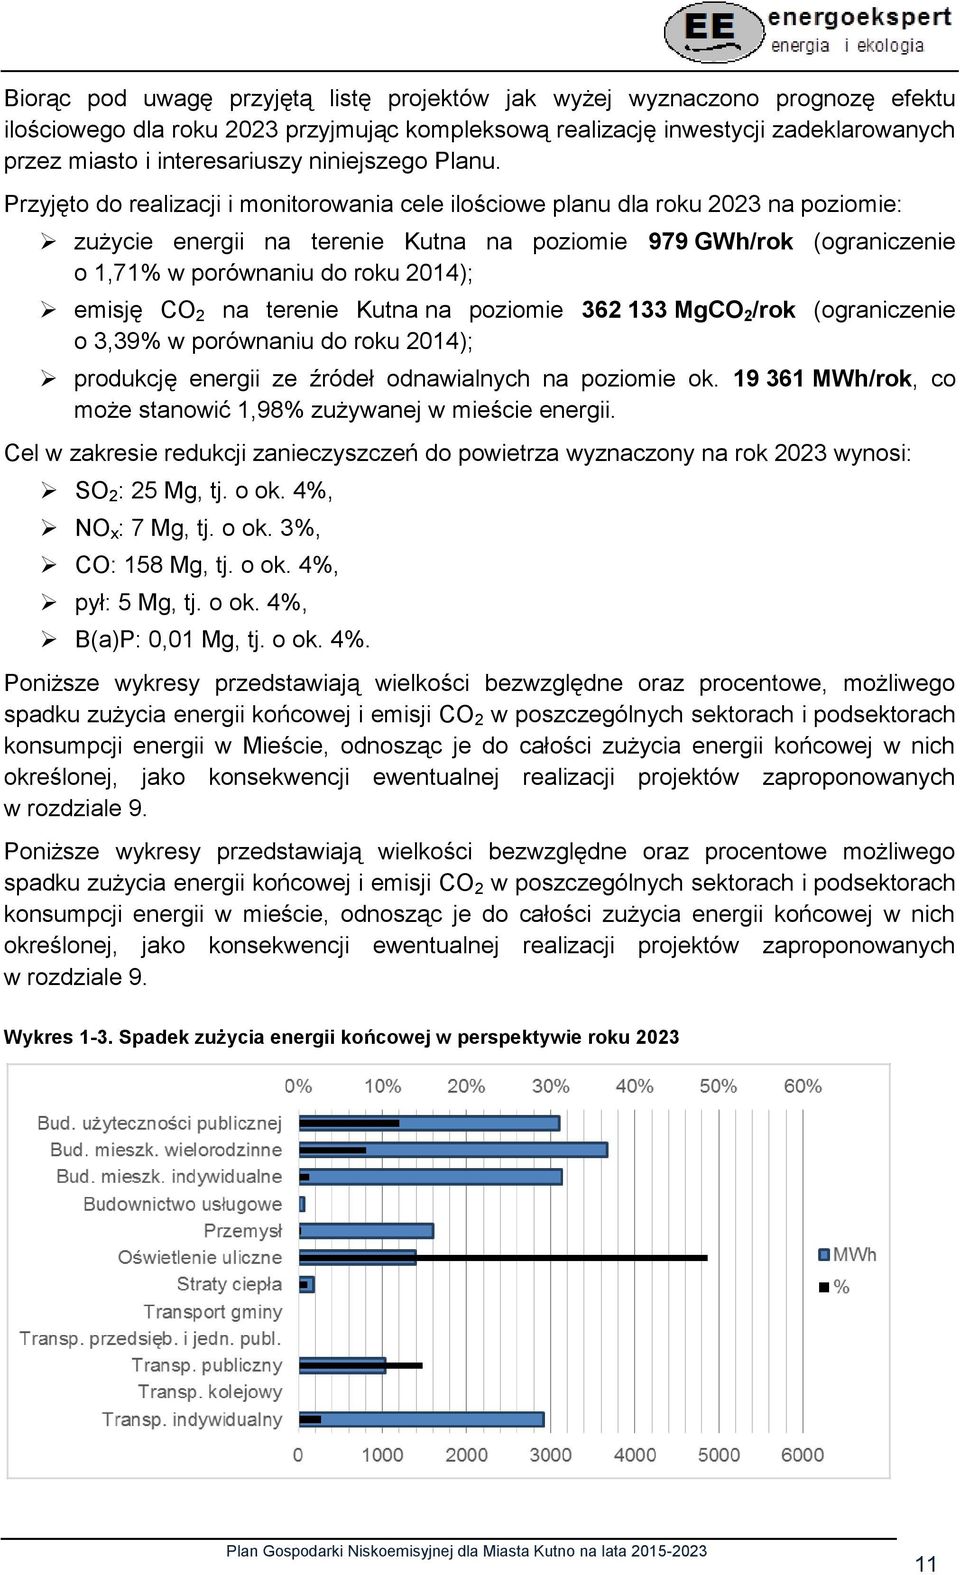 Przyjęto do realizacji i monitorowania cele ilościowe planu dla roku 2023 na poziomie: zużycie energii na terenie Kutna na poziomie 979 GWh/rok (ograniczenie o 1,71% w porównaniu do roku 2014);